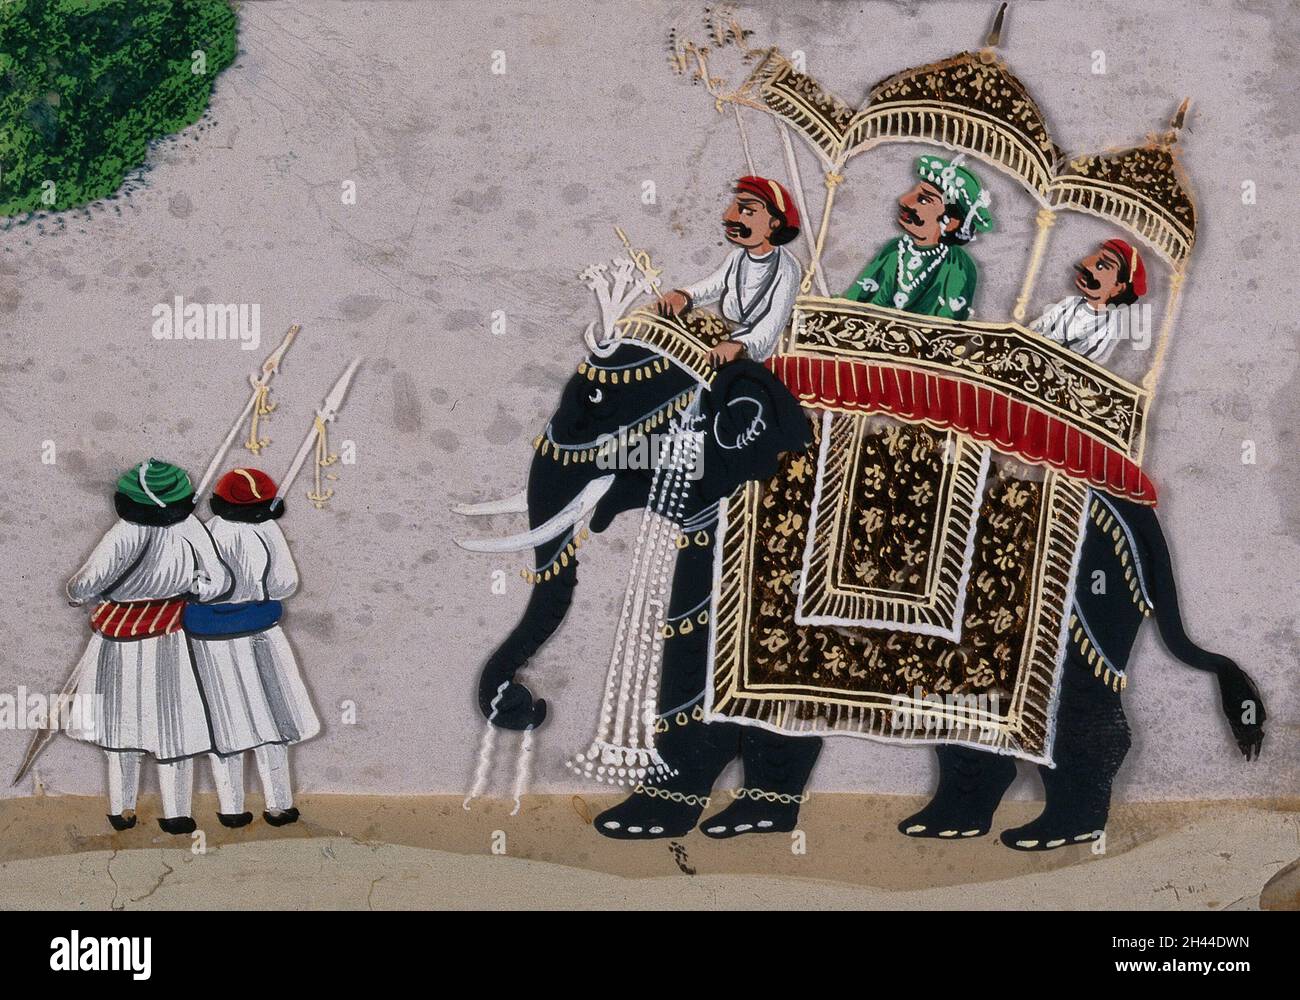 Un homme de haut rang assis sur un howdah (siège à baldaquin) élaboré au-dessus d'un éléphant, précédé de deux gardes.Gouache peint sur mica par un artiste indien. Banque D'Images